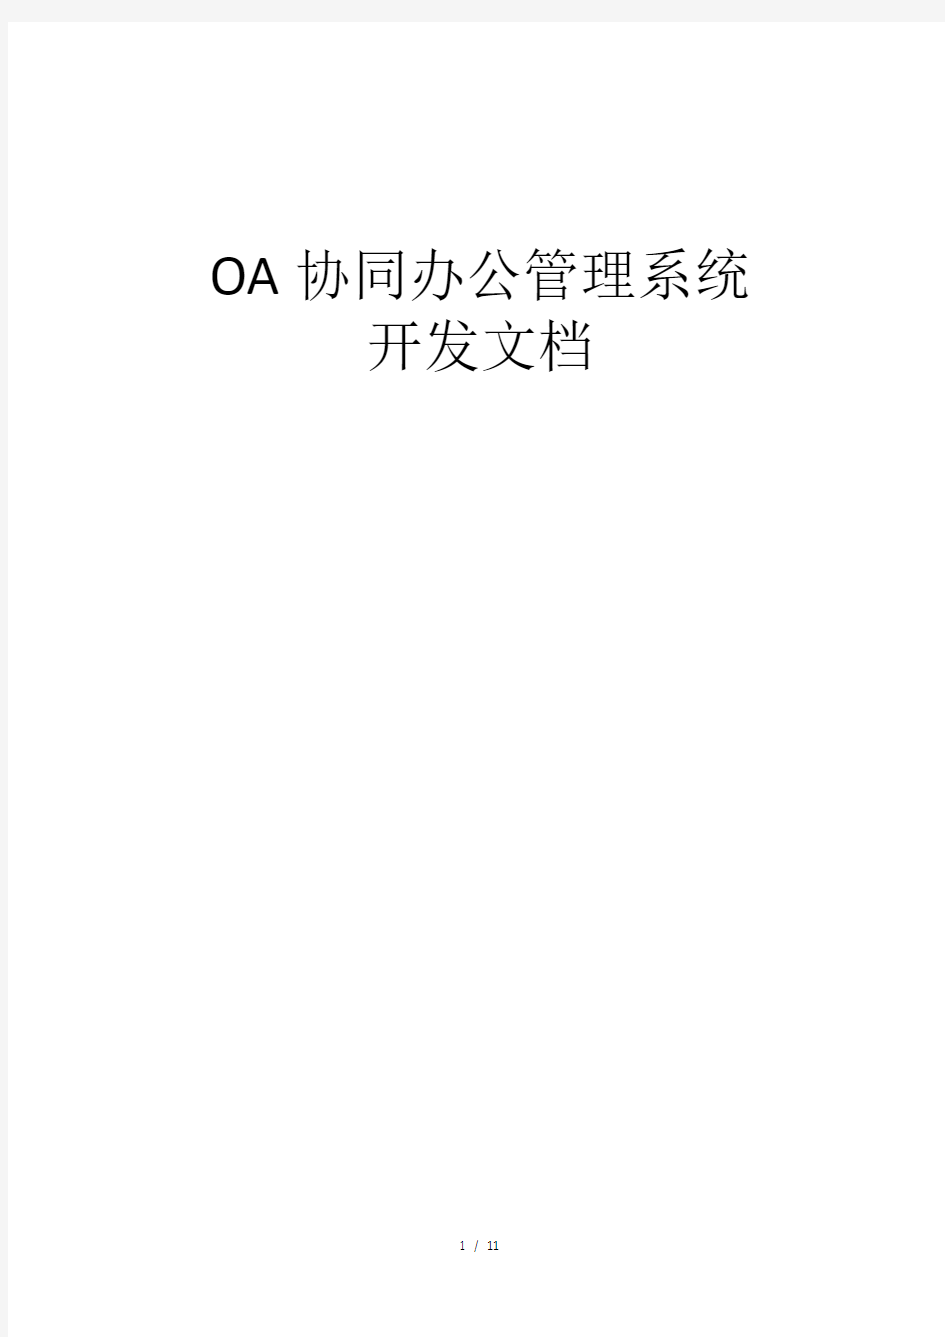 (完整版)OA协同办公管理系统开发文档